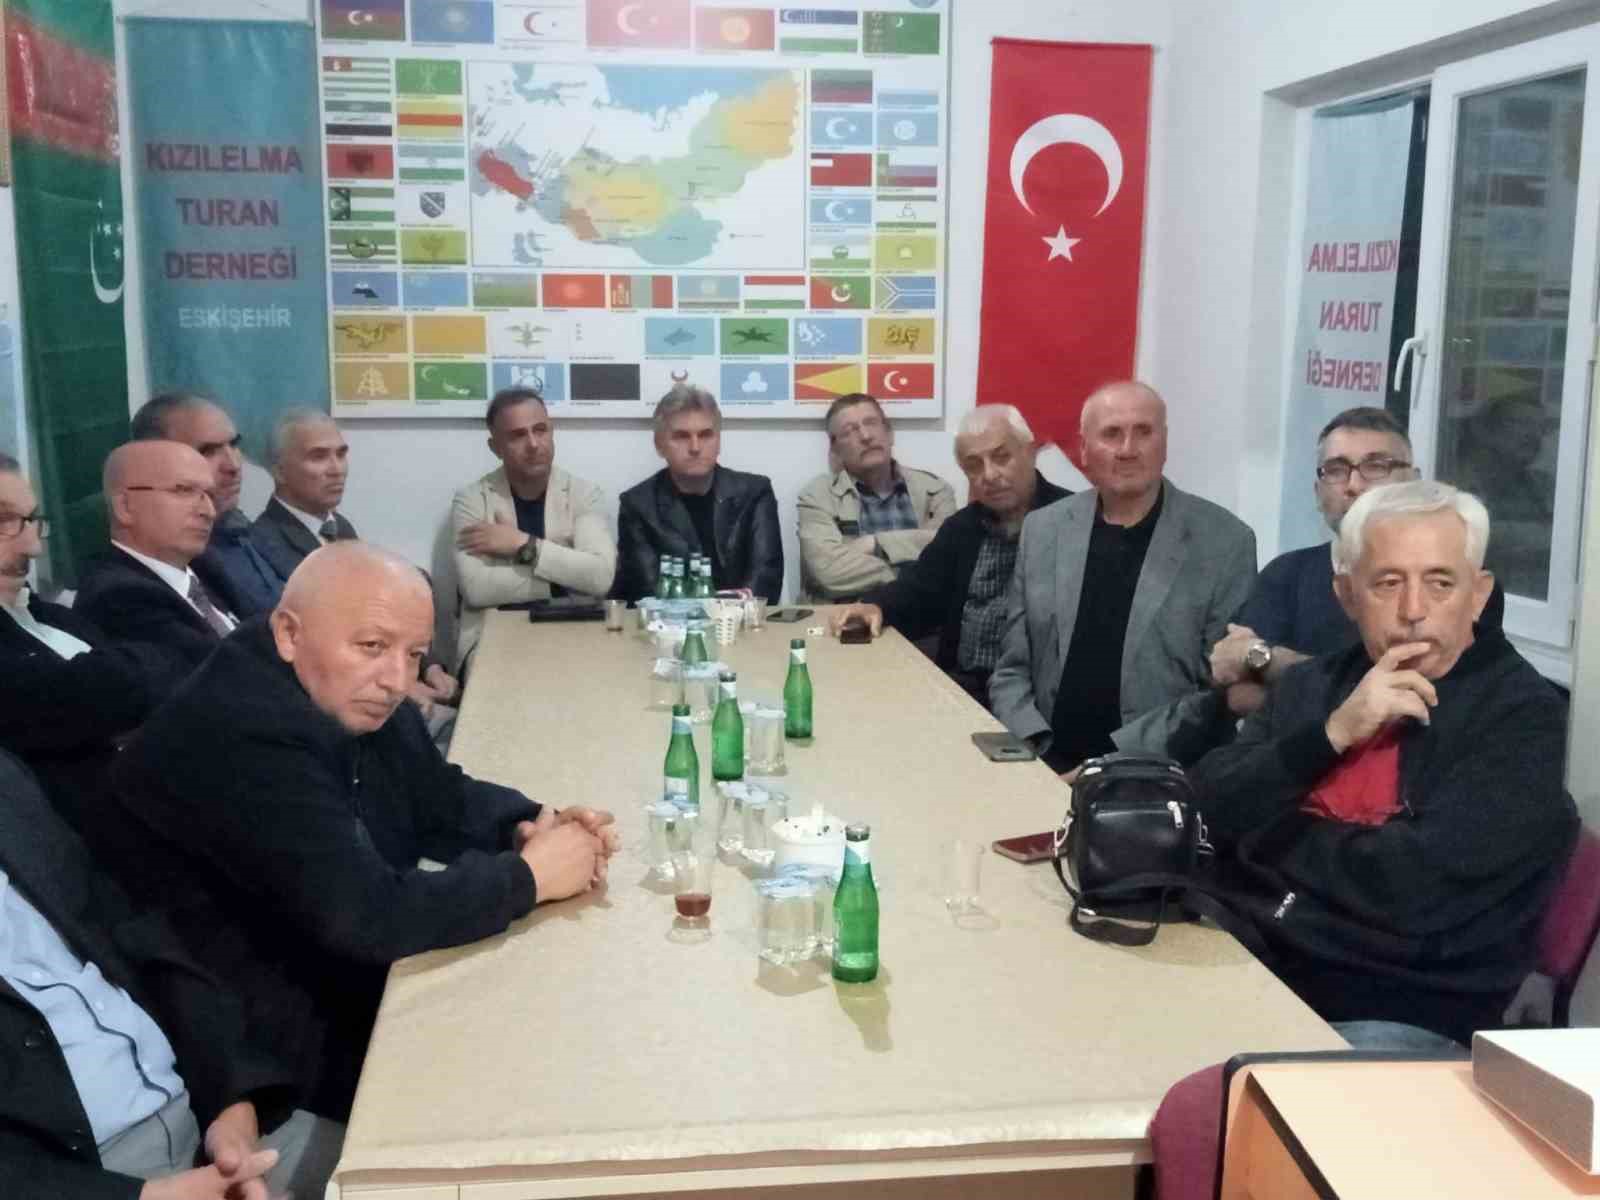 ESOGÜ TÖMER Müdürü Doç. Dr. Oktay Berber’in ‘Cumhuriyet Dönemi Türkiye Rusya ilişkileri’ konulu konferans